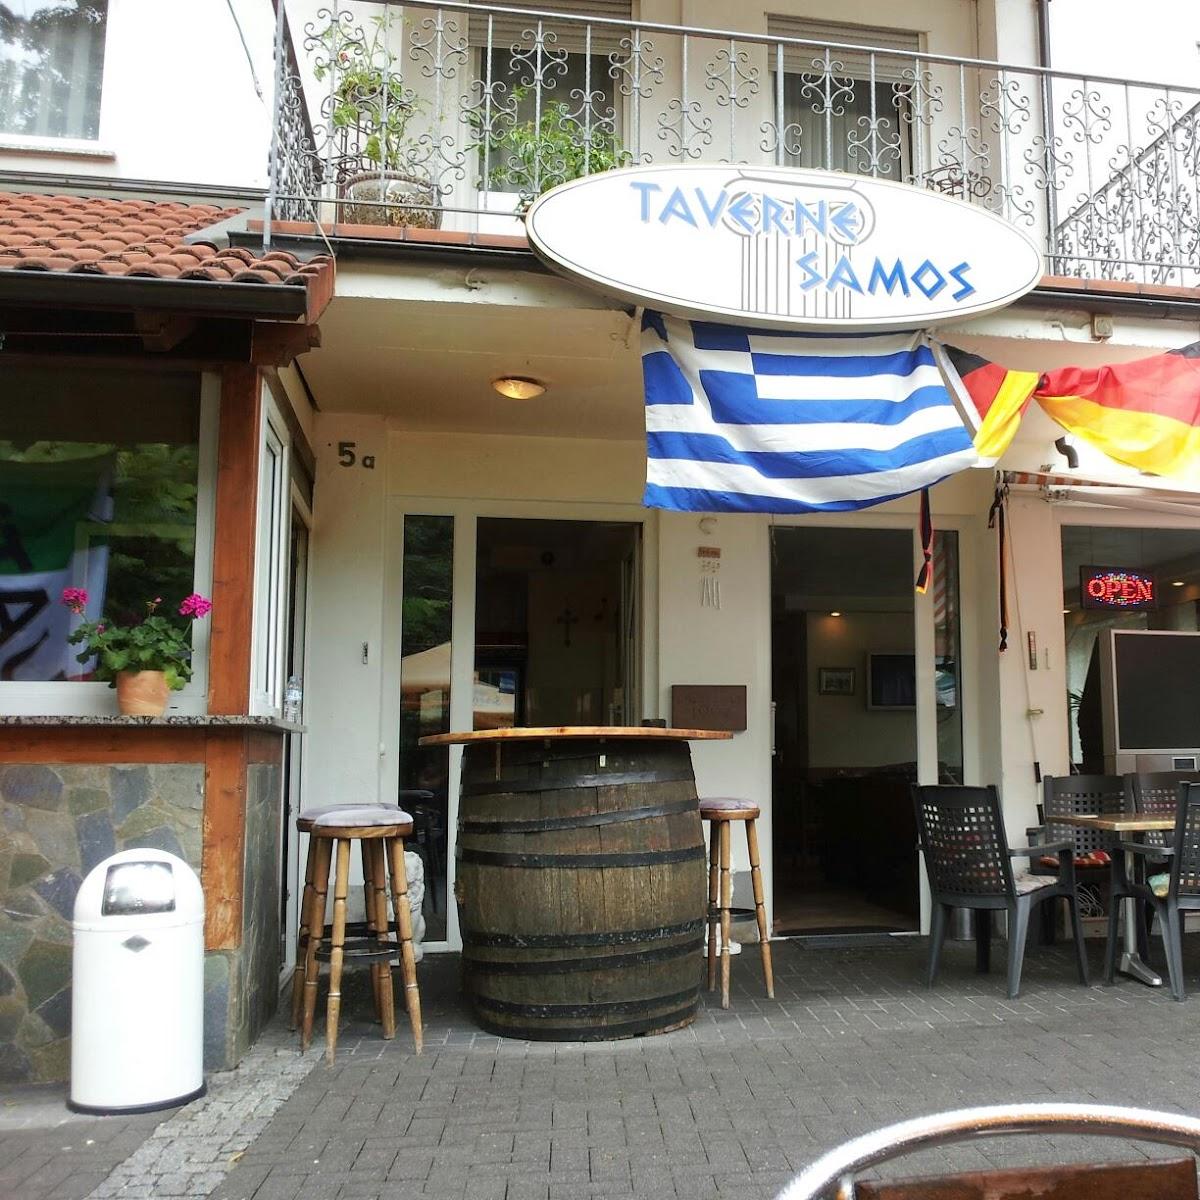 Restaurant "Taverne Samos" in Niederkassel